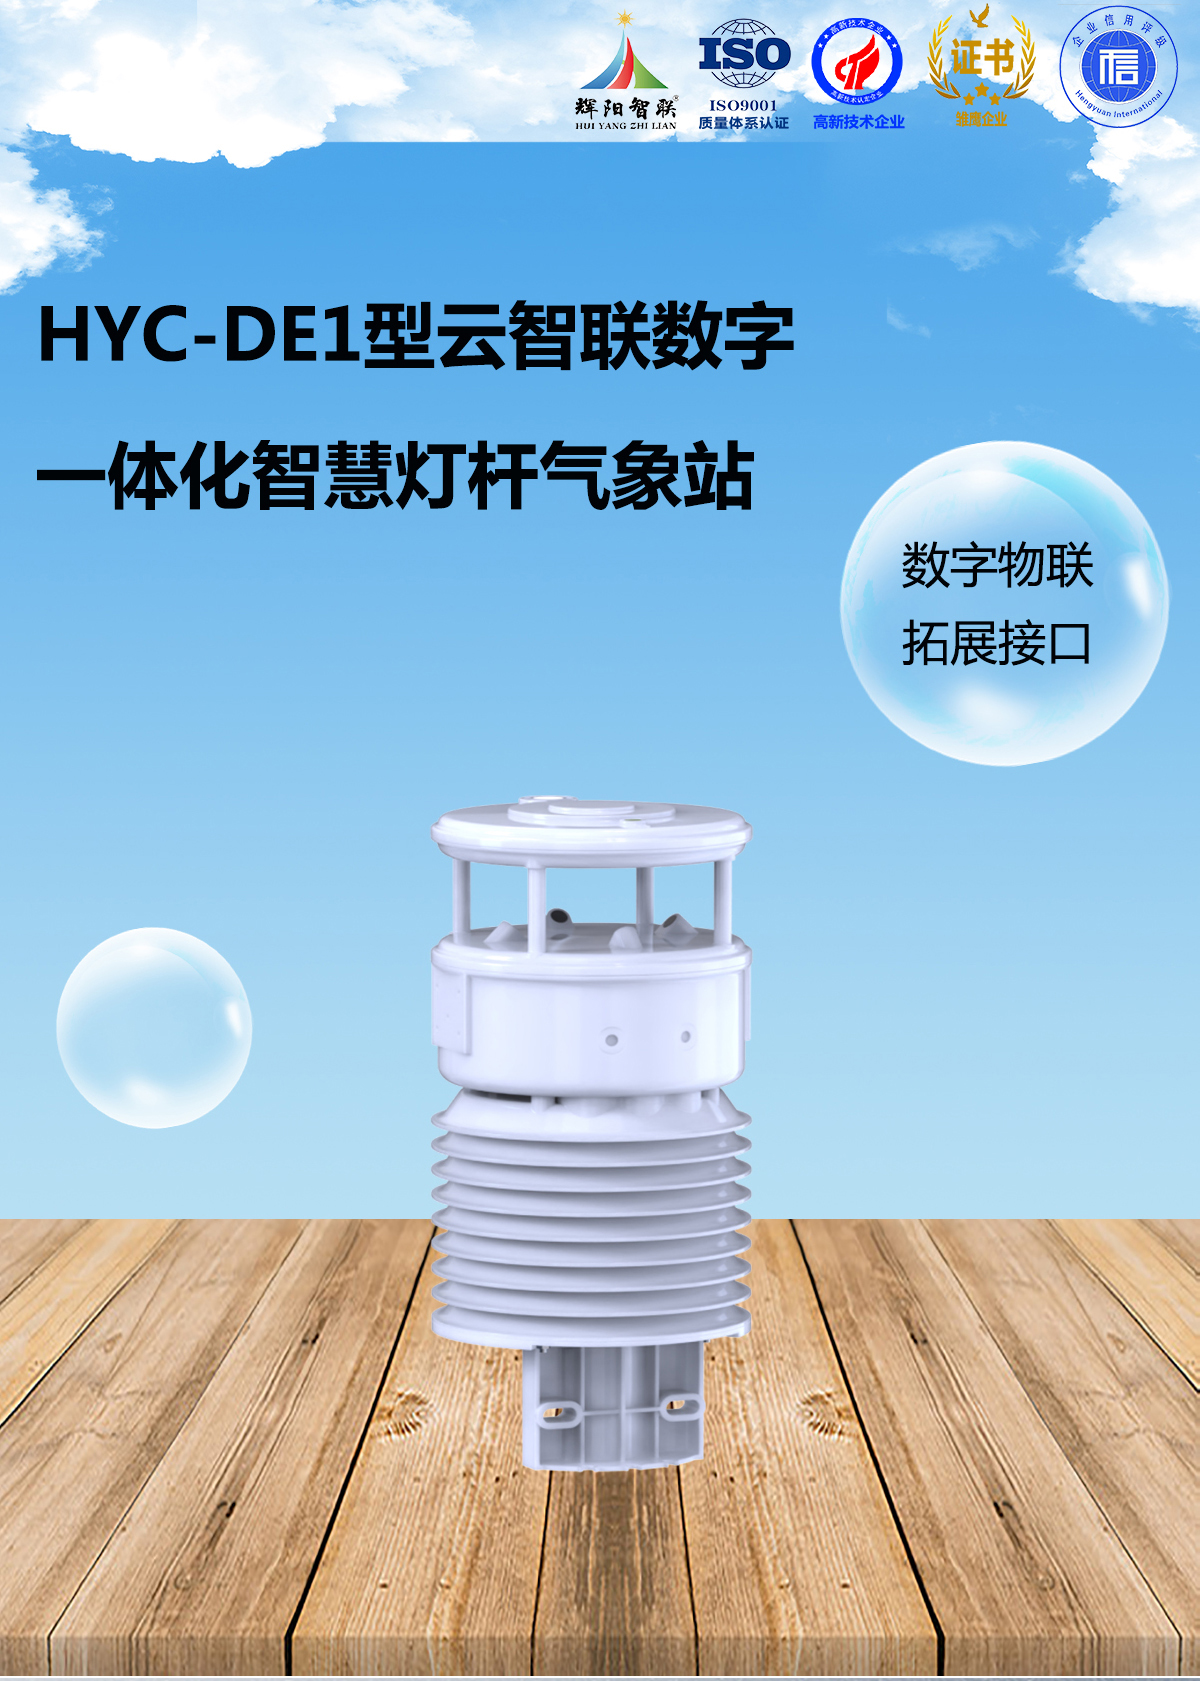 HYC-DE1型一体化智慧灯杆气象站